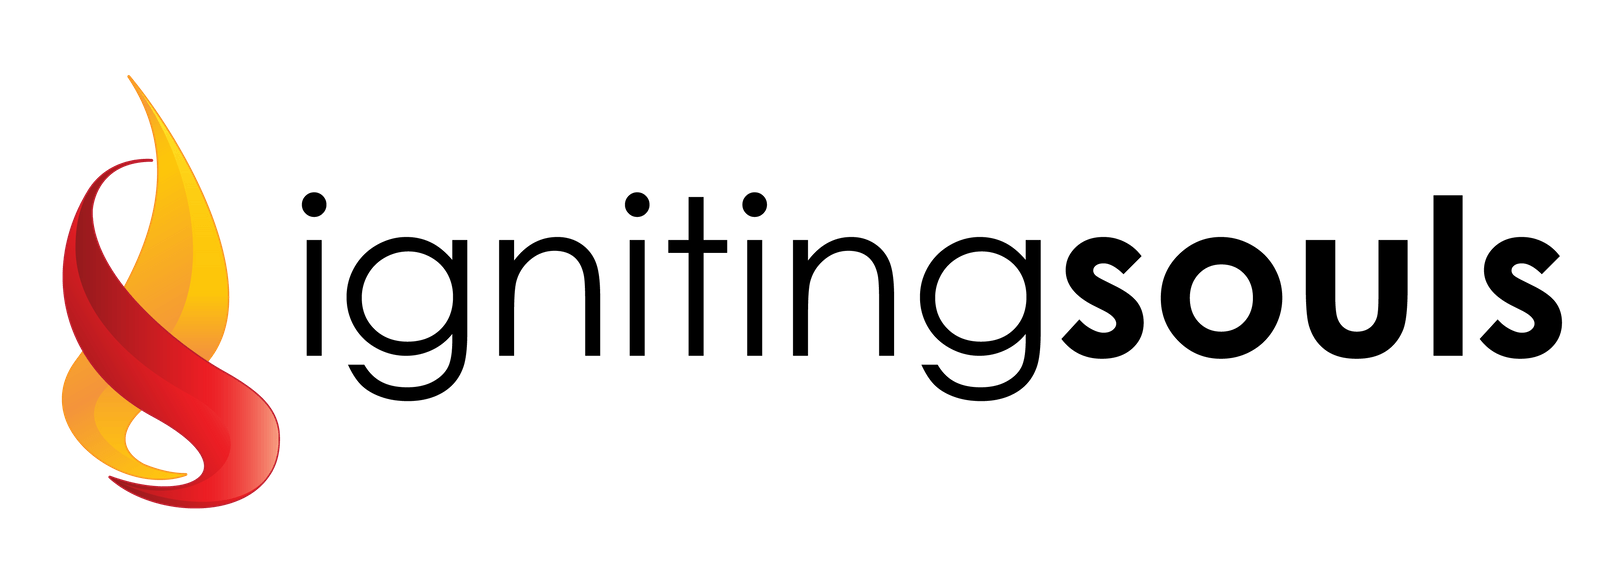 Igniting Souls Publishing Agency